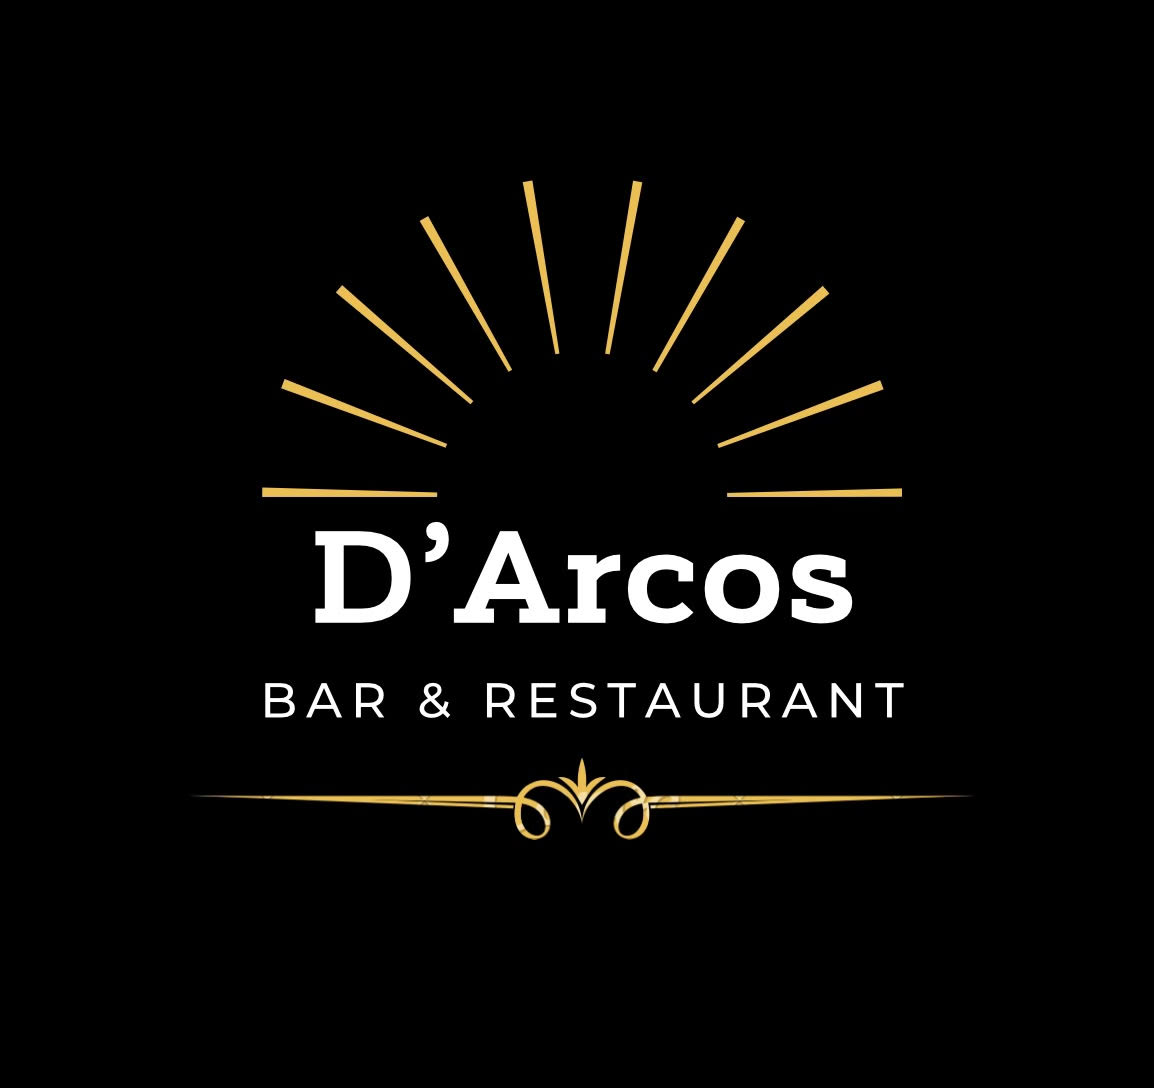 D'Arcos Bar & Restaurant